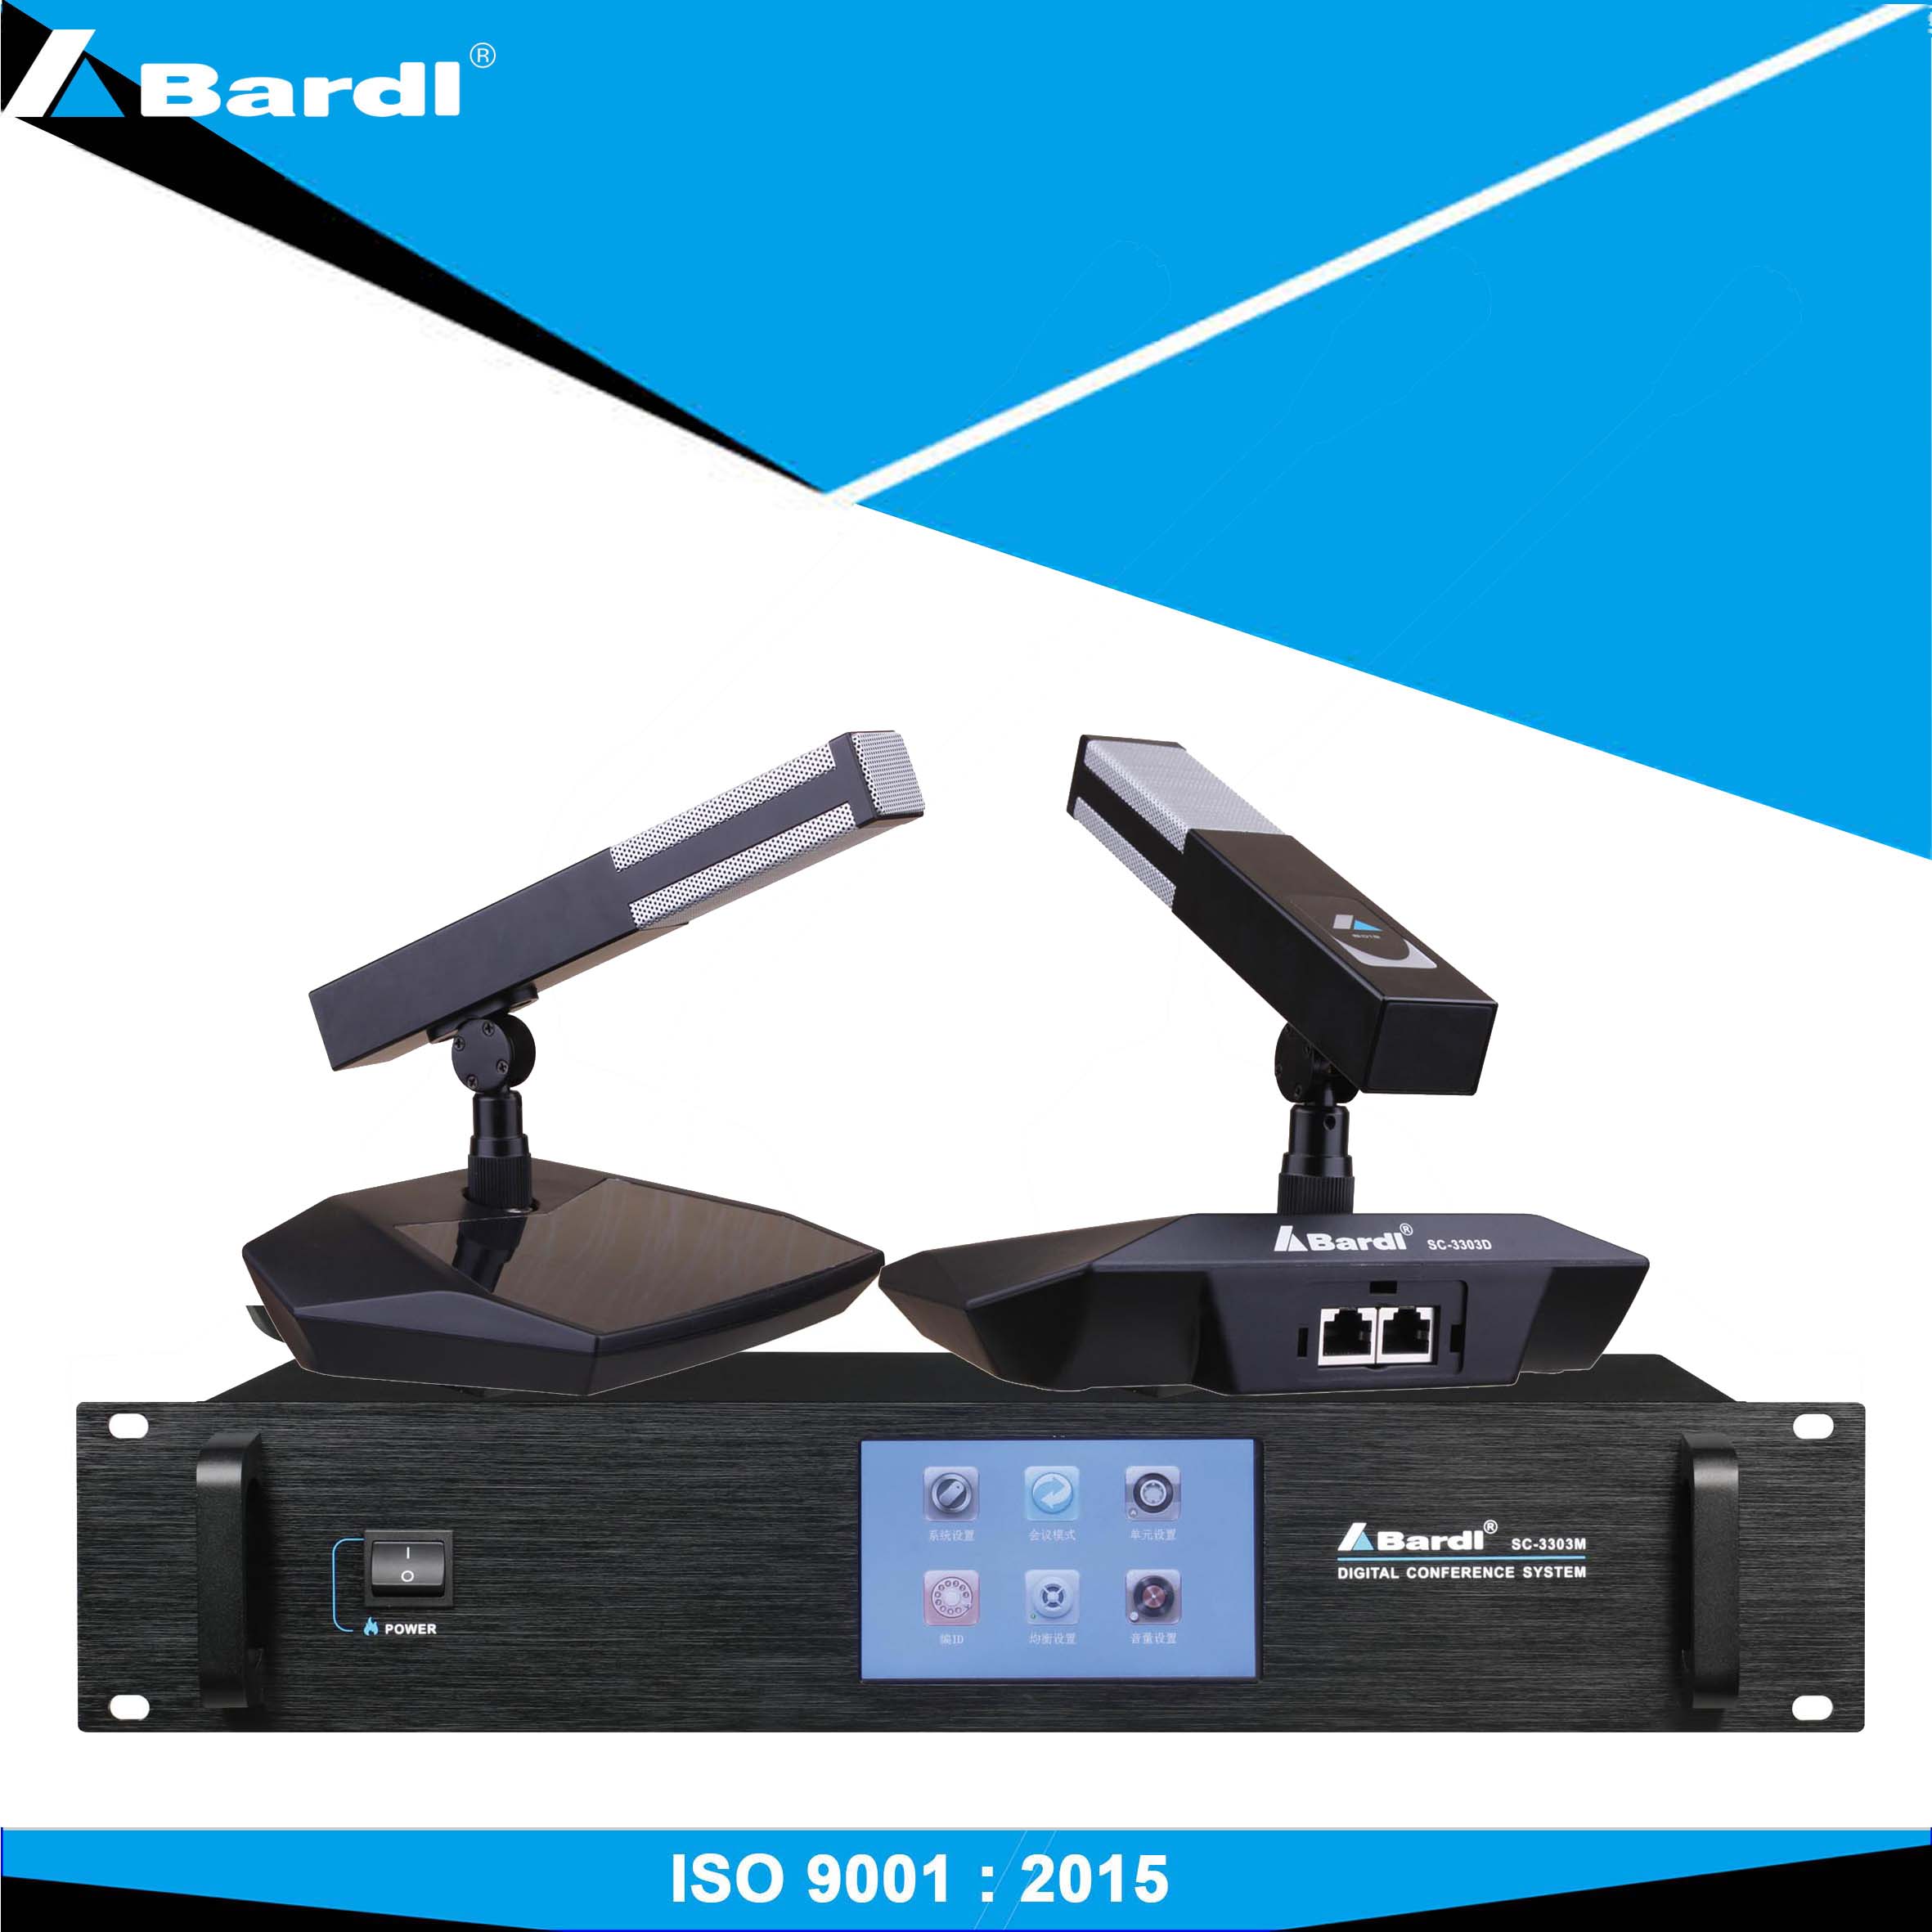 Bardl Digital conference system SC-3303